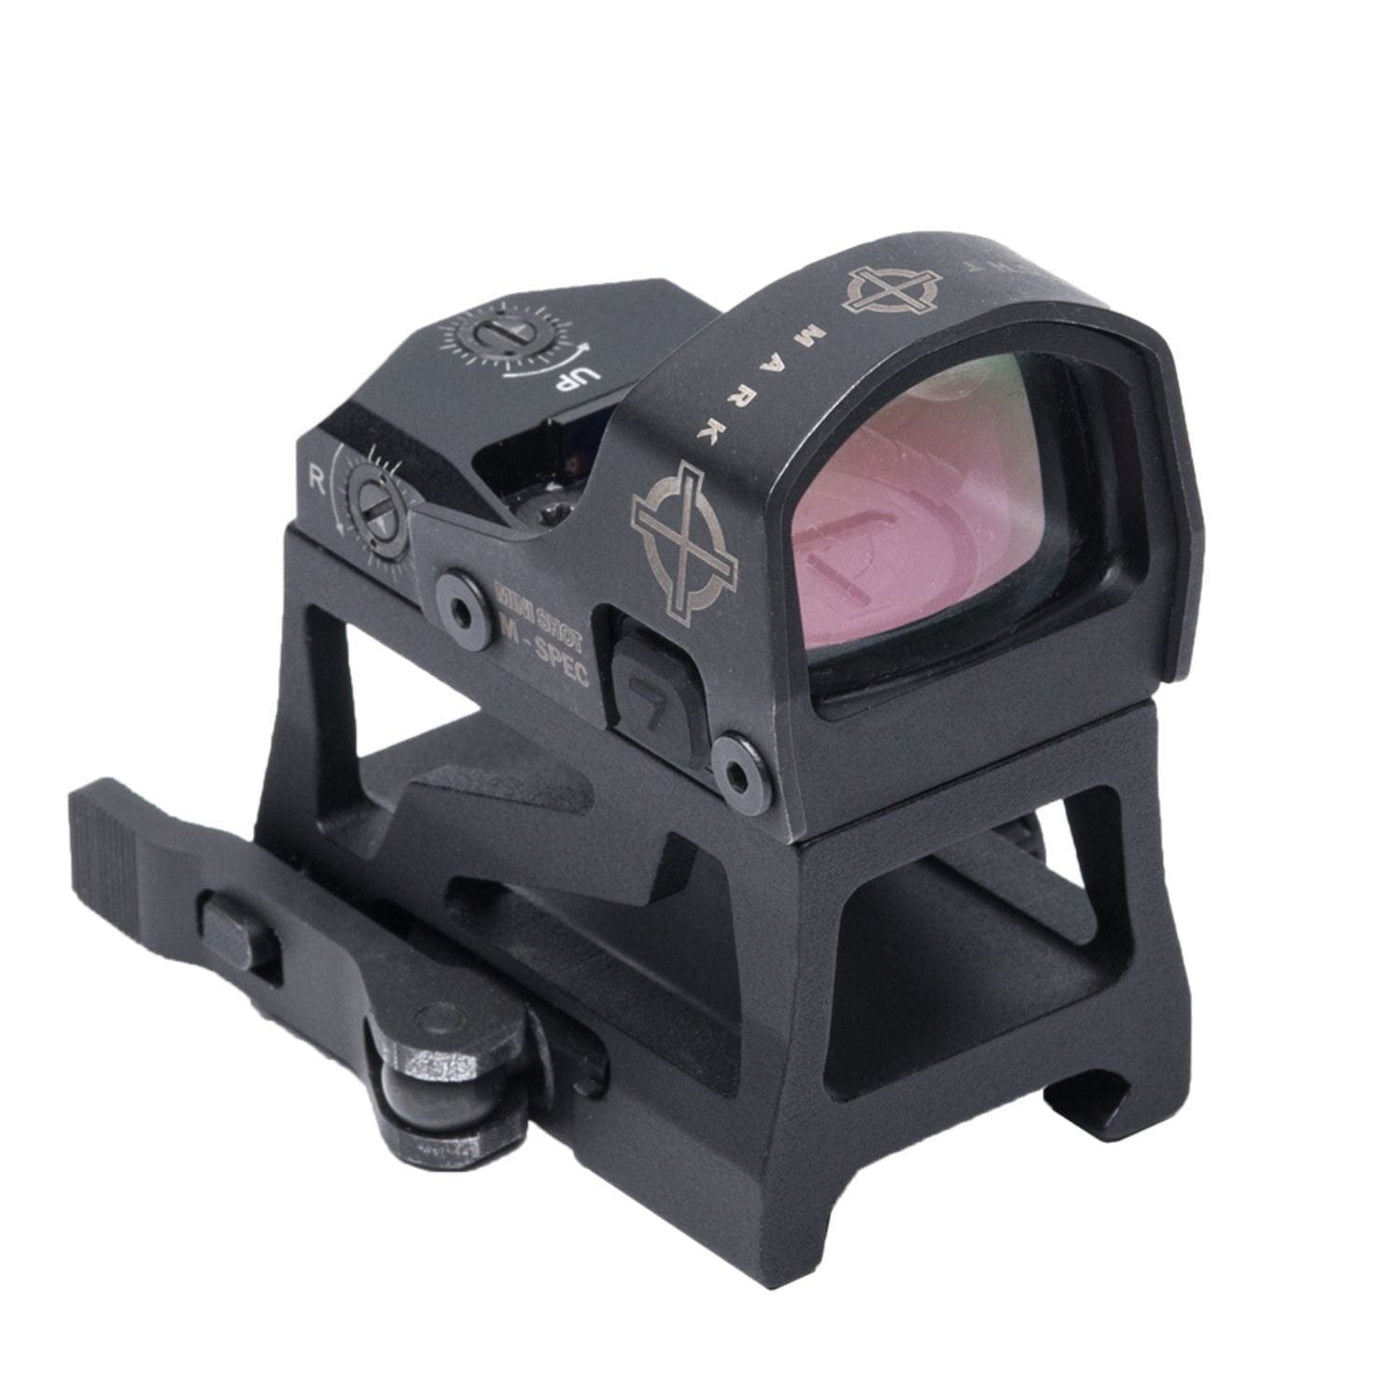 Sightmark Sightmark Mini Shot M-Spec LQD Reflex Sight Optics And Sights